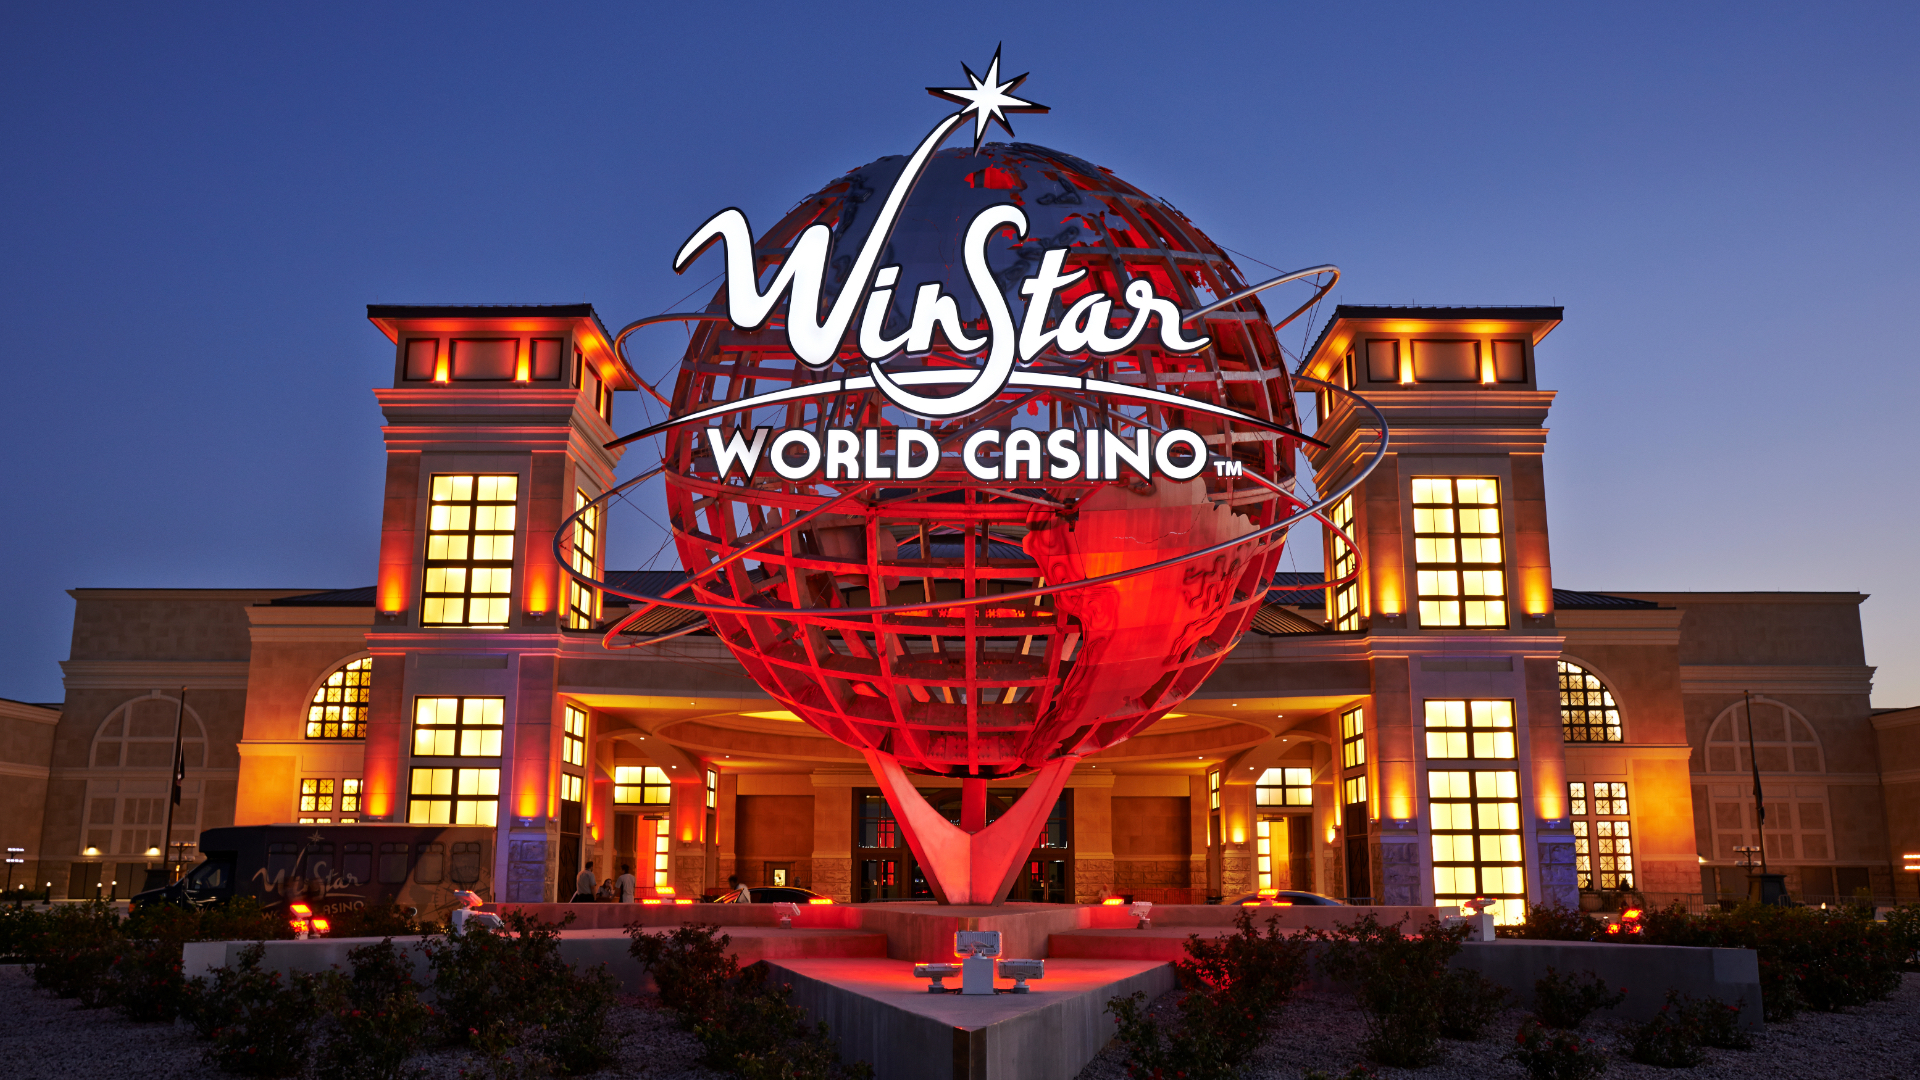 Vorfahrt des WinStar World Casinos.